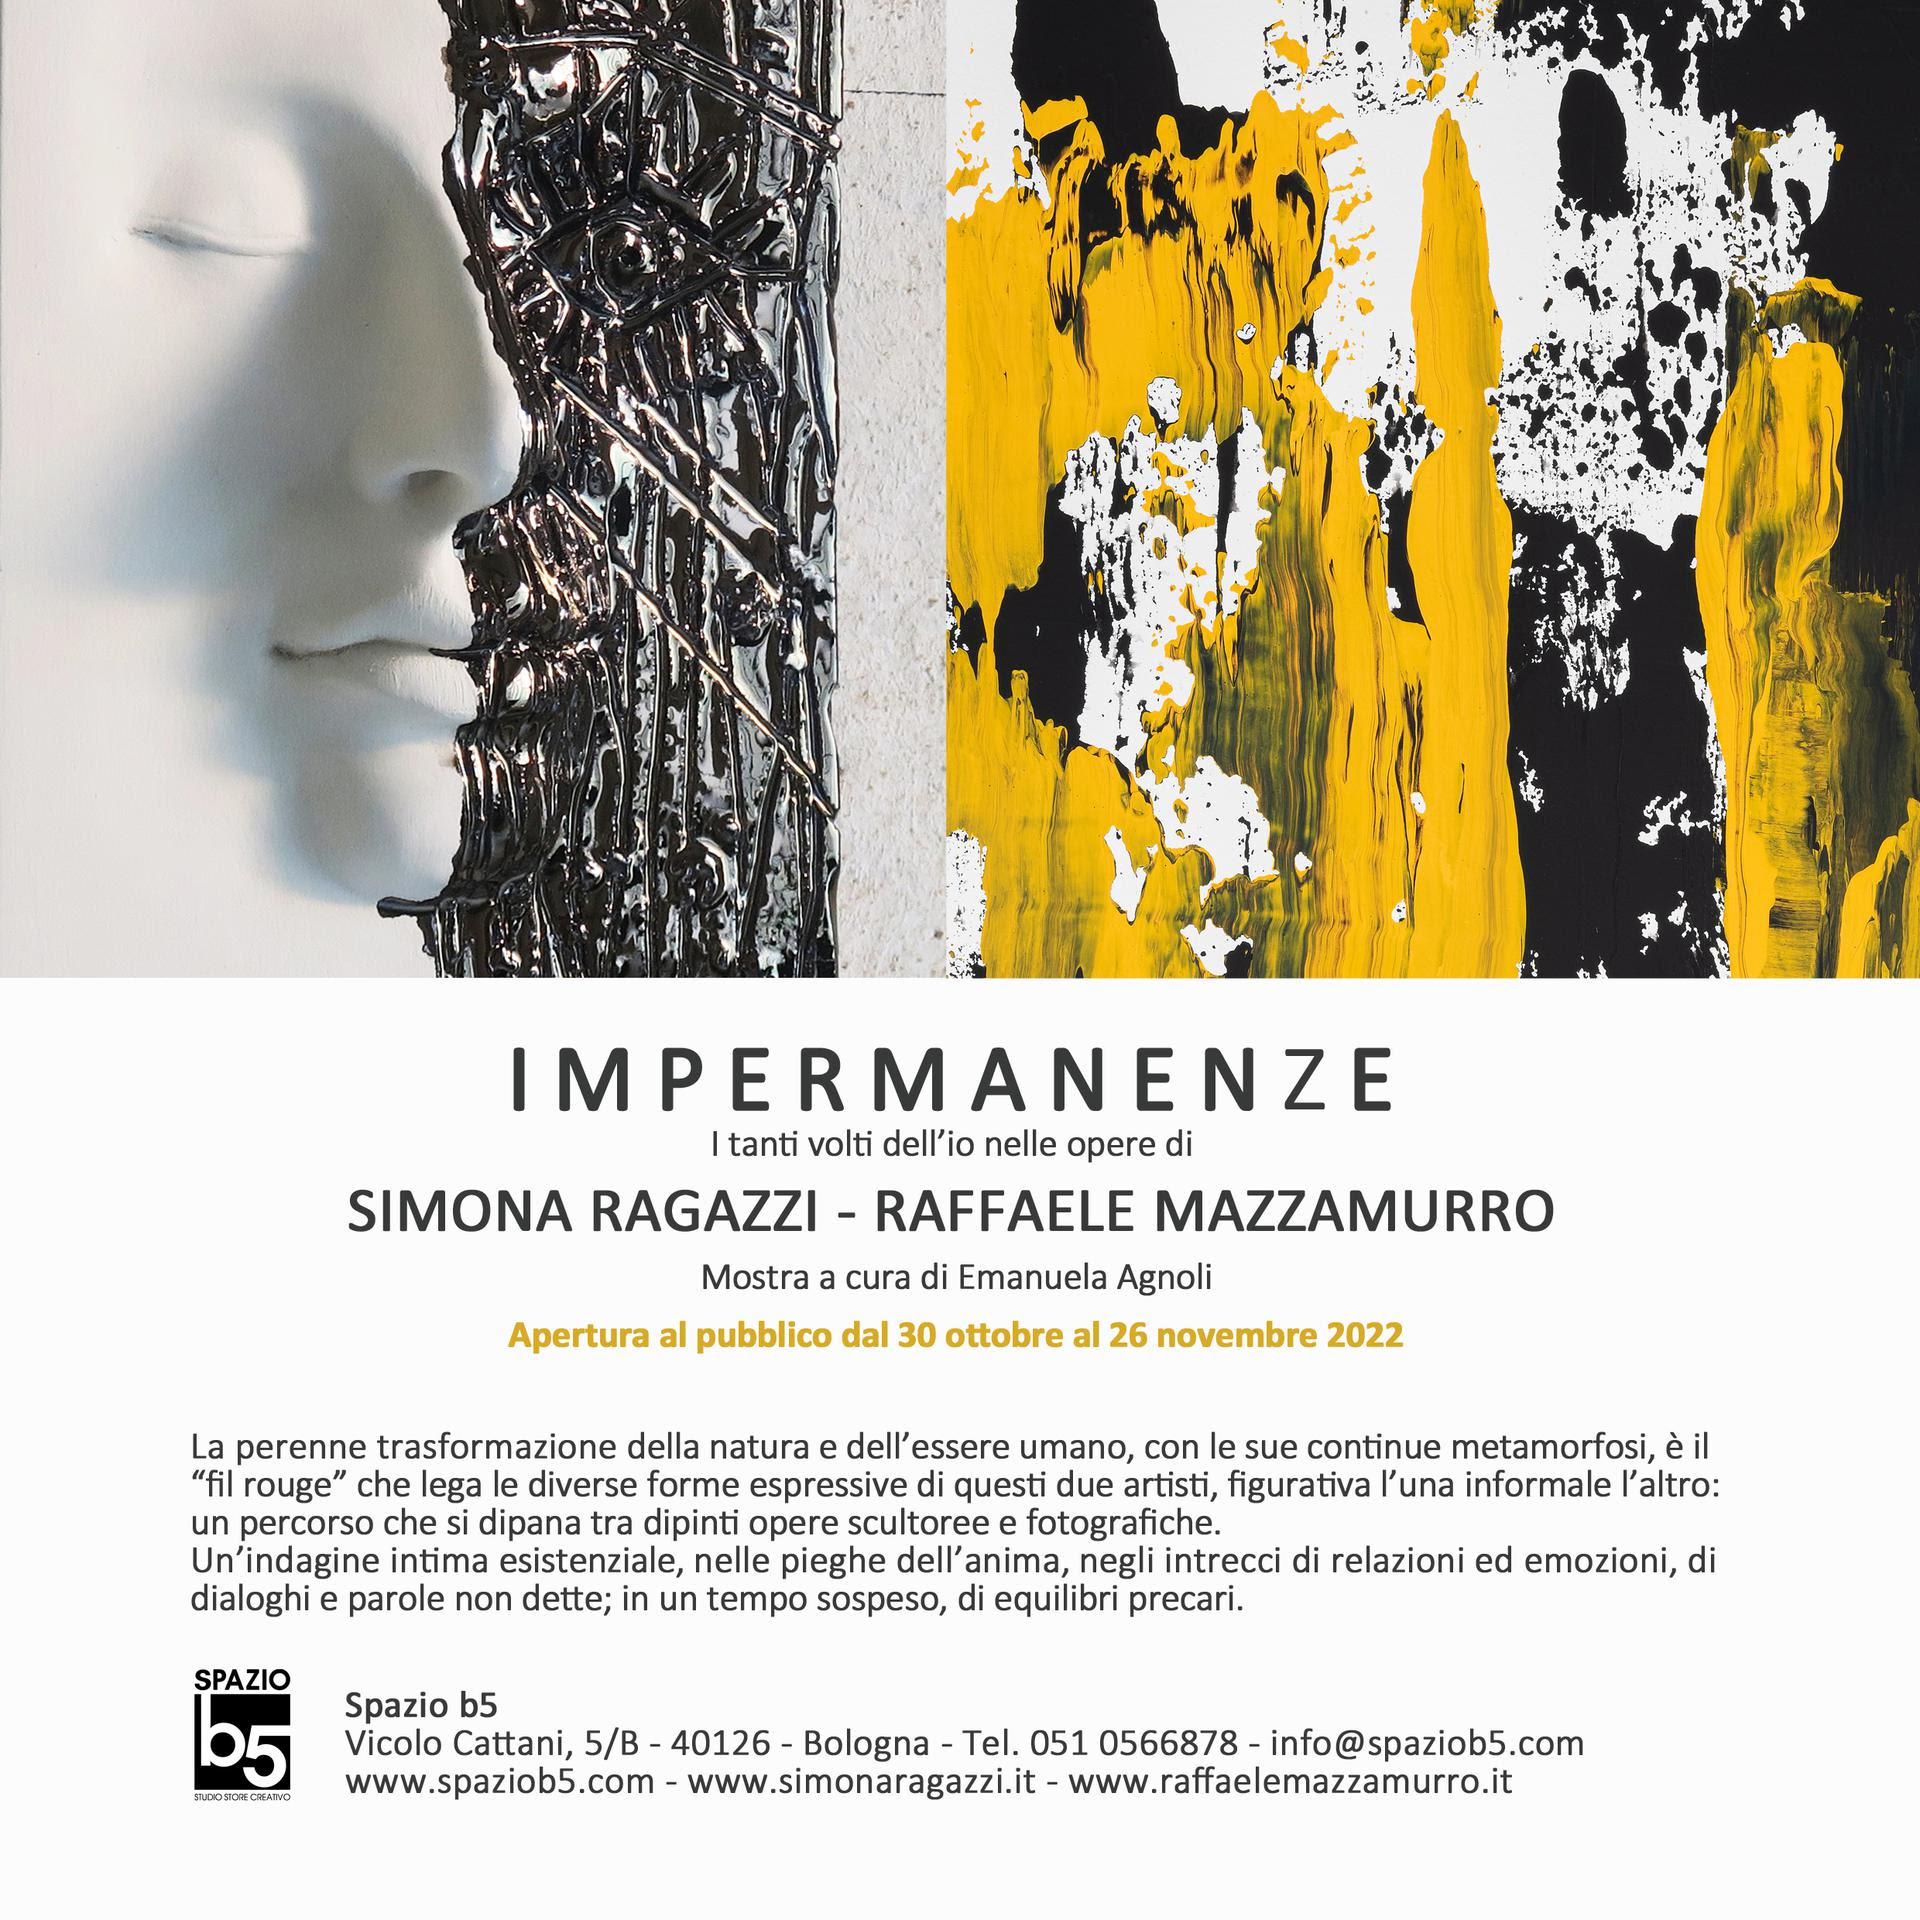 IMPERMANENZE: I tanti volti dell’Io nelle opere di Simona Ragazzi e Raffaele Mazzamurro